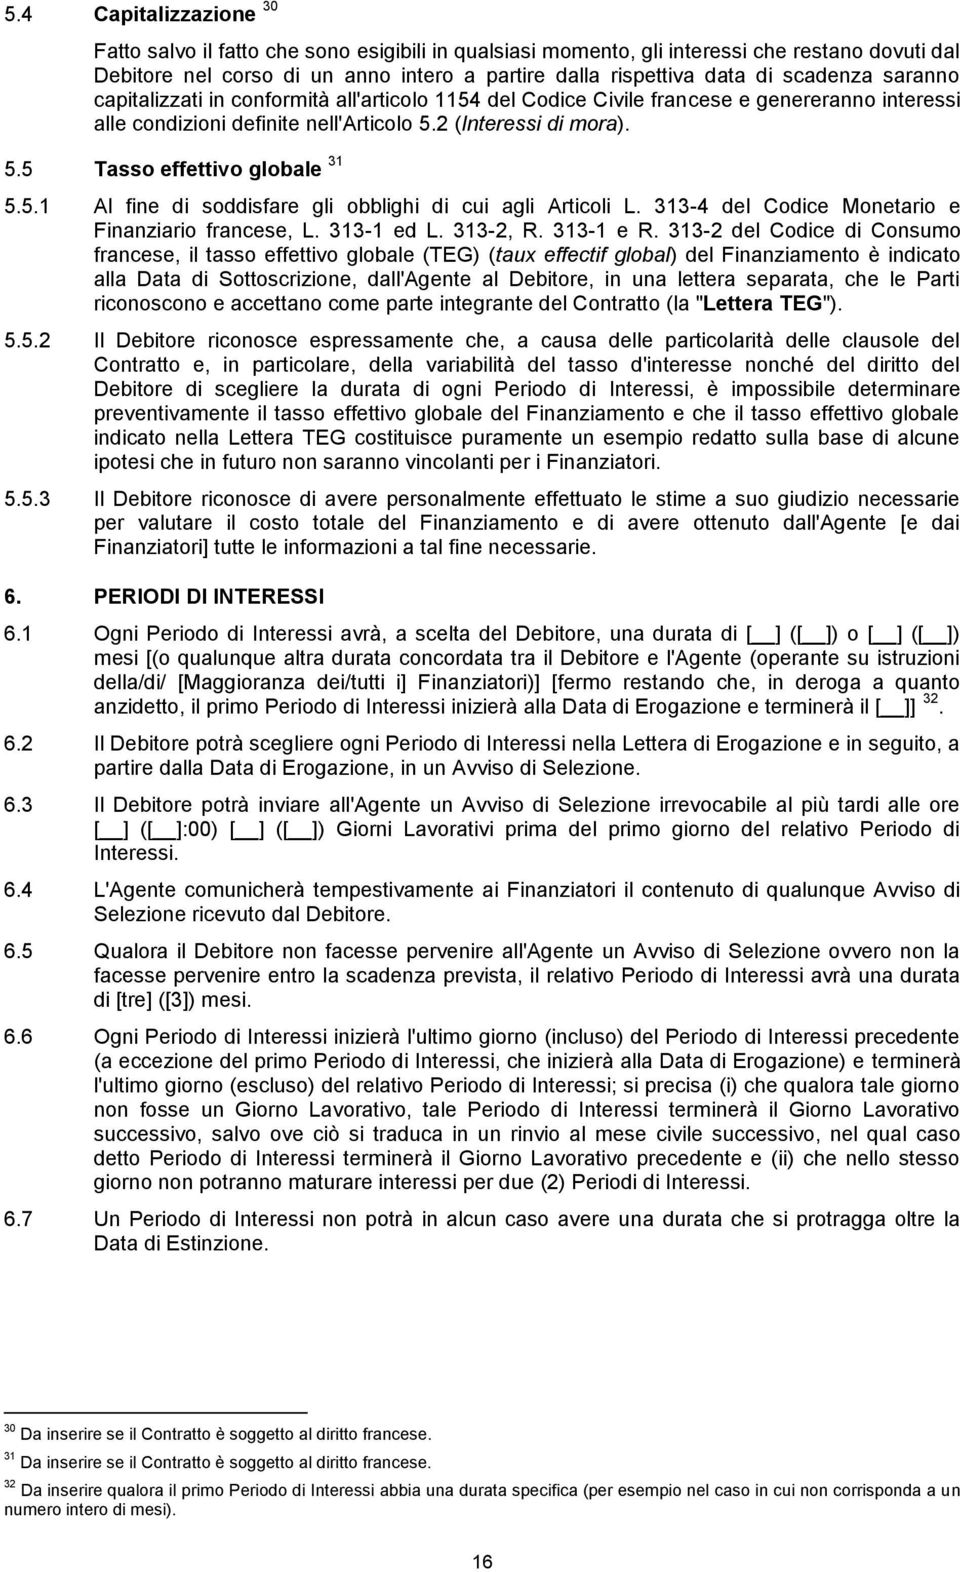 5.1 Al fine di soddisfare gli obblighi di cui agli Articoli L. 313-4 del Codice Monetario e Finanziario francese, L. 313-1 ed L. 313-2, R. 313-1 e R.